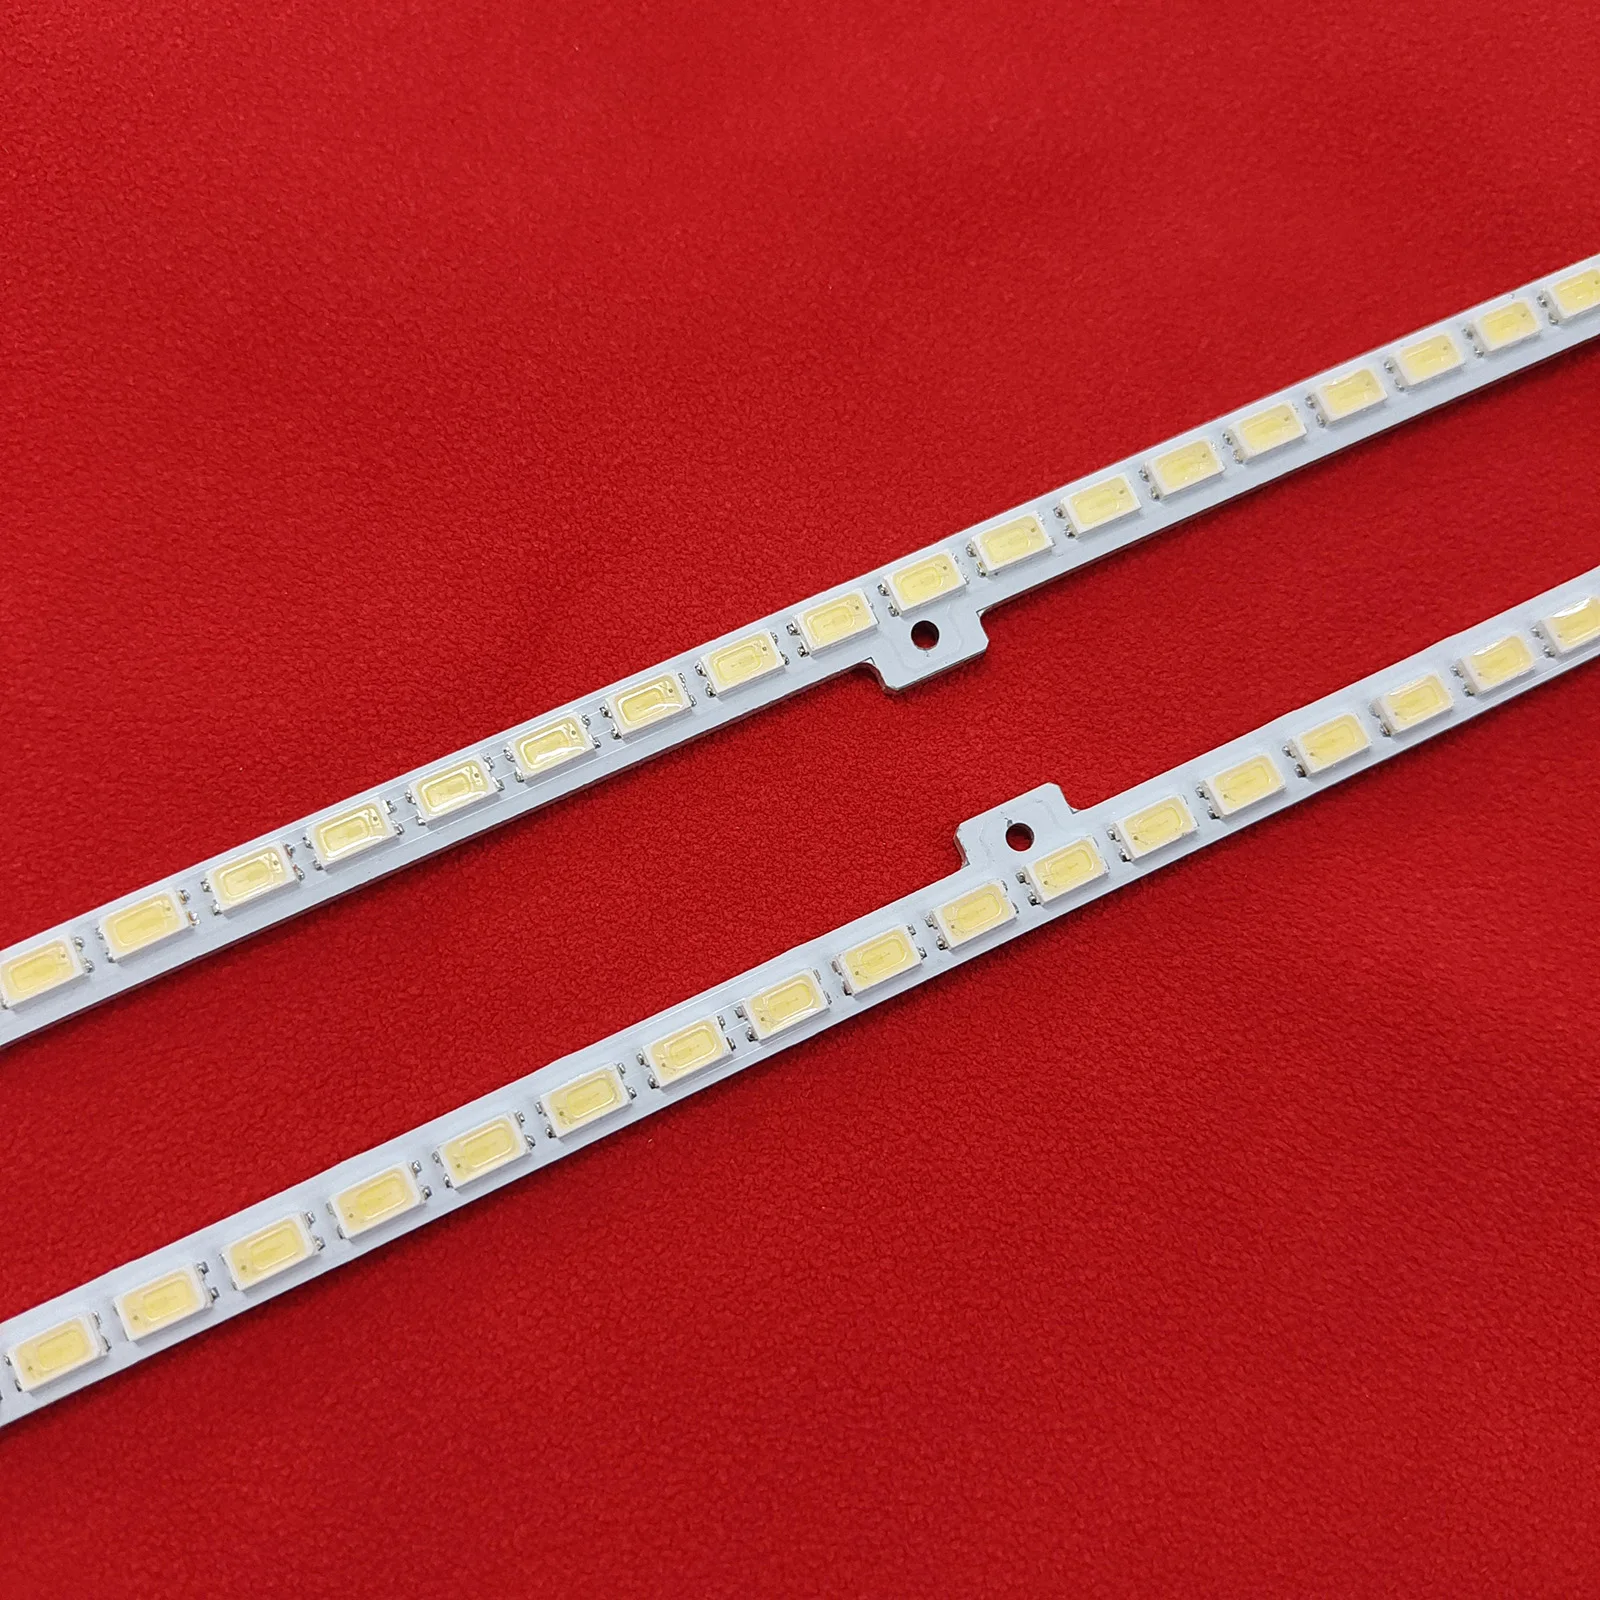 Tira de luces LED de retroiluminación, accesorio para UE46D5000 2011SVS46-FHD-5K6K UE46D6000 UN46D6000 UA46D5000 JVG4-460SMB-R1 LTJ460HN01, BN64-01644A